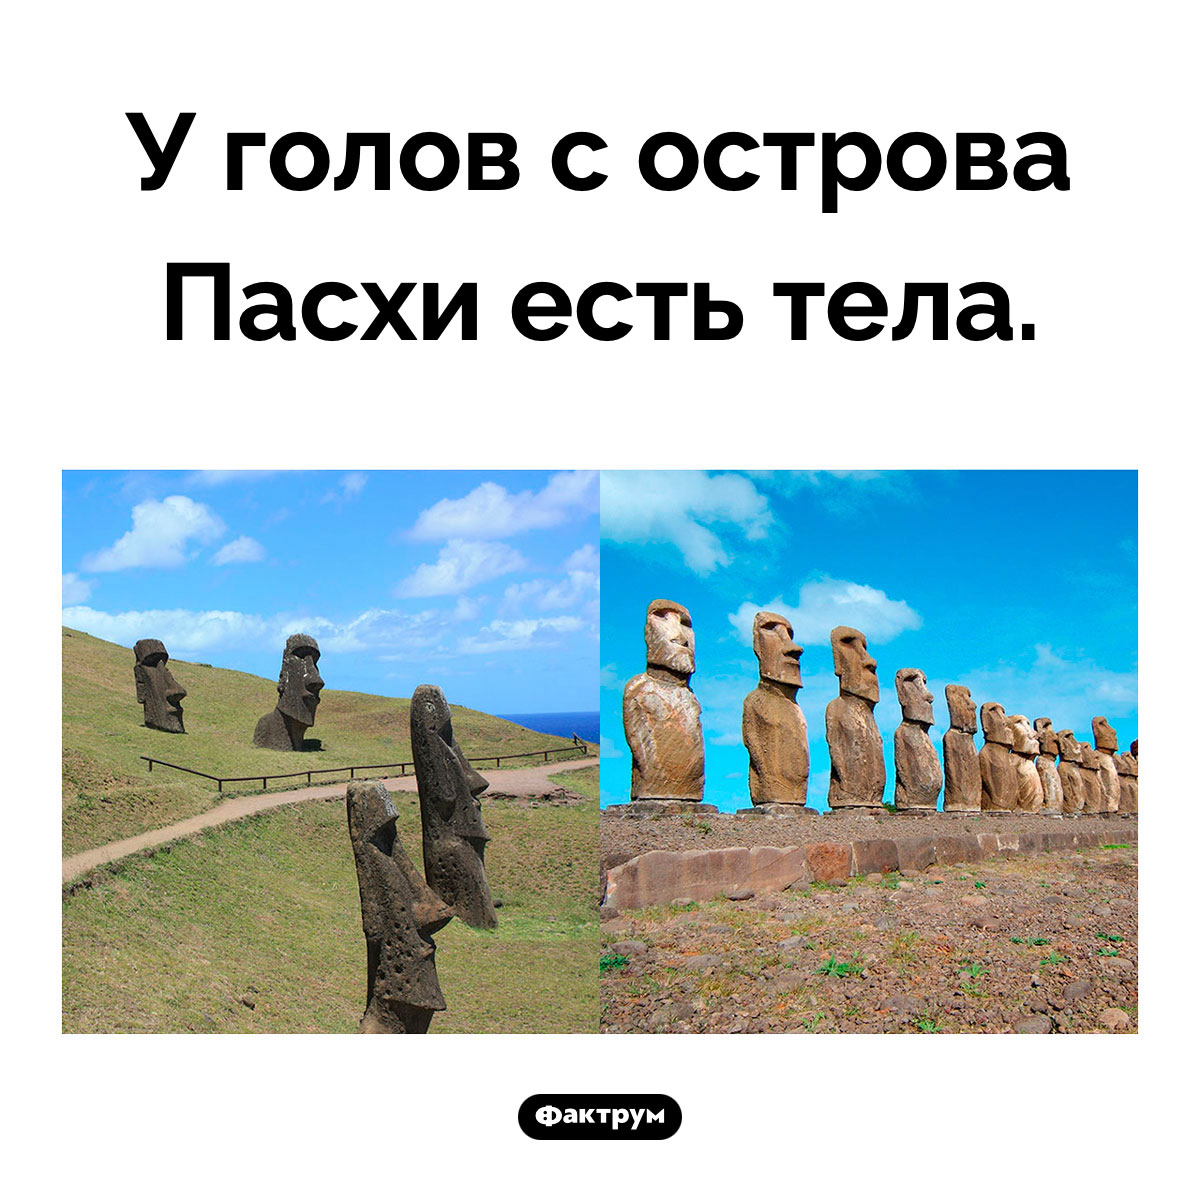 Тела Моаи. Когда археологи решили посмотреть, что находится под знаменитыми монументами голов, выяснилось, что там… всё остальное, что должно быть ниже шеи!